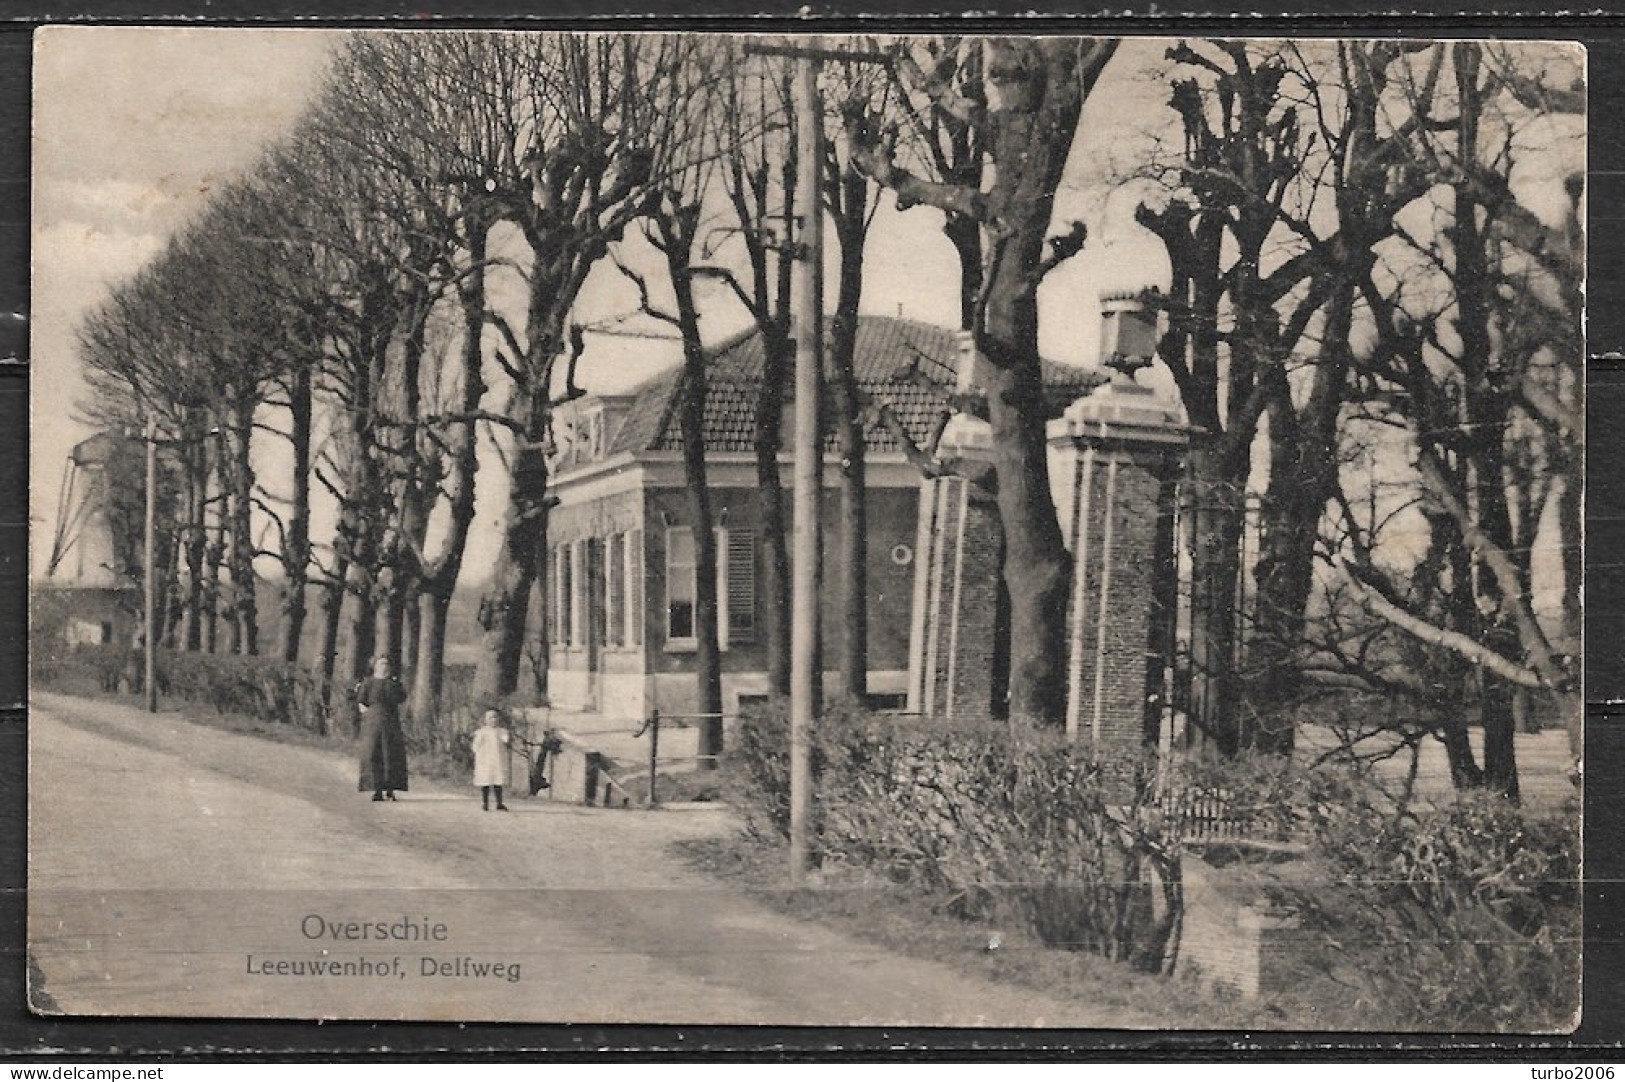 1935 Overschie Buitenplaats De Leeuwenhof Aan De Delftweg Ca 1900. Links De Schieveense Molen. Z/w Gelopen Naar Mookhoek - Rotterdam